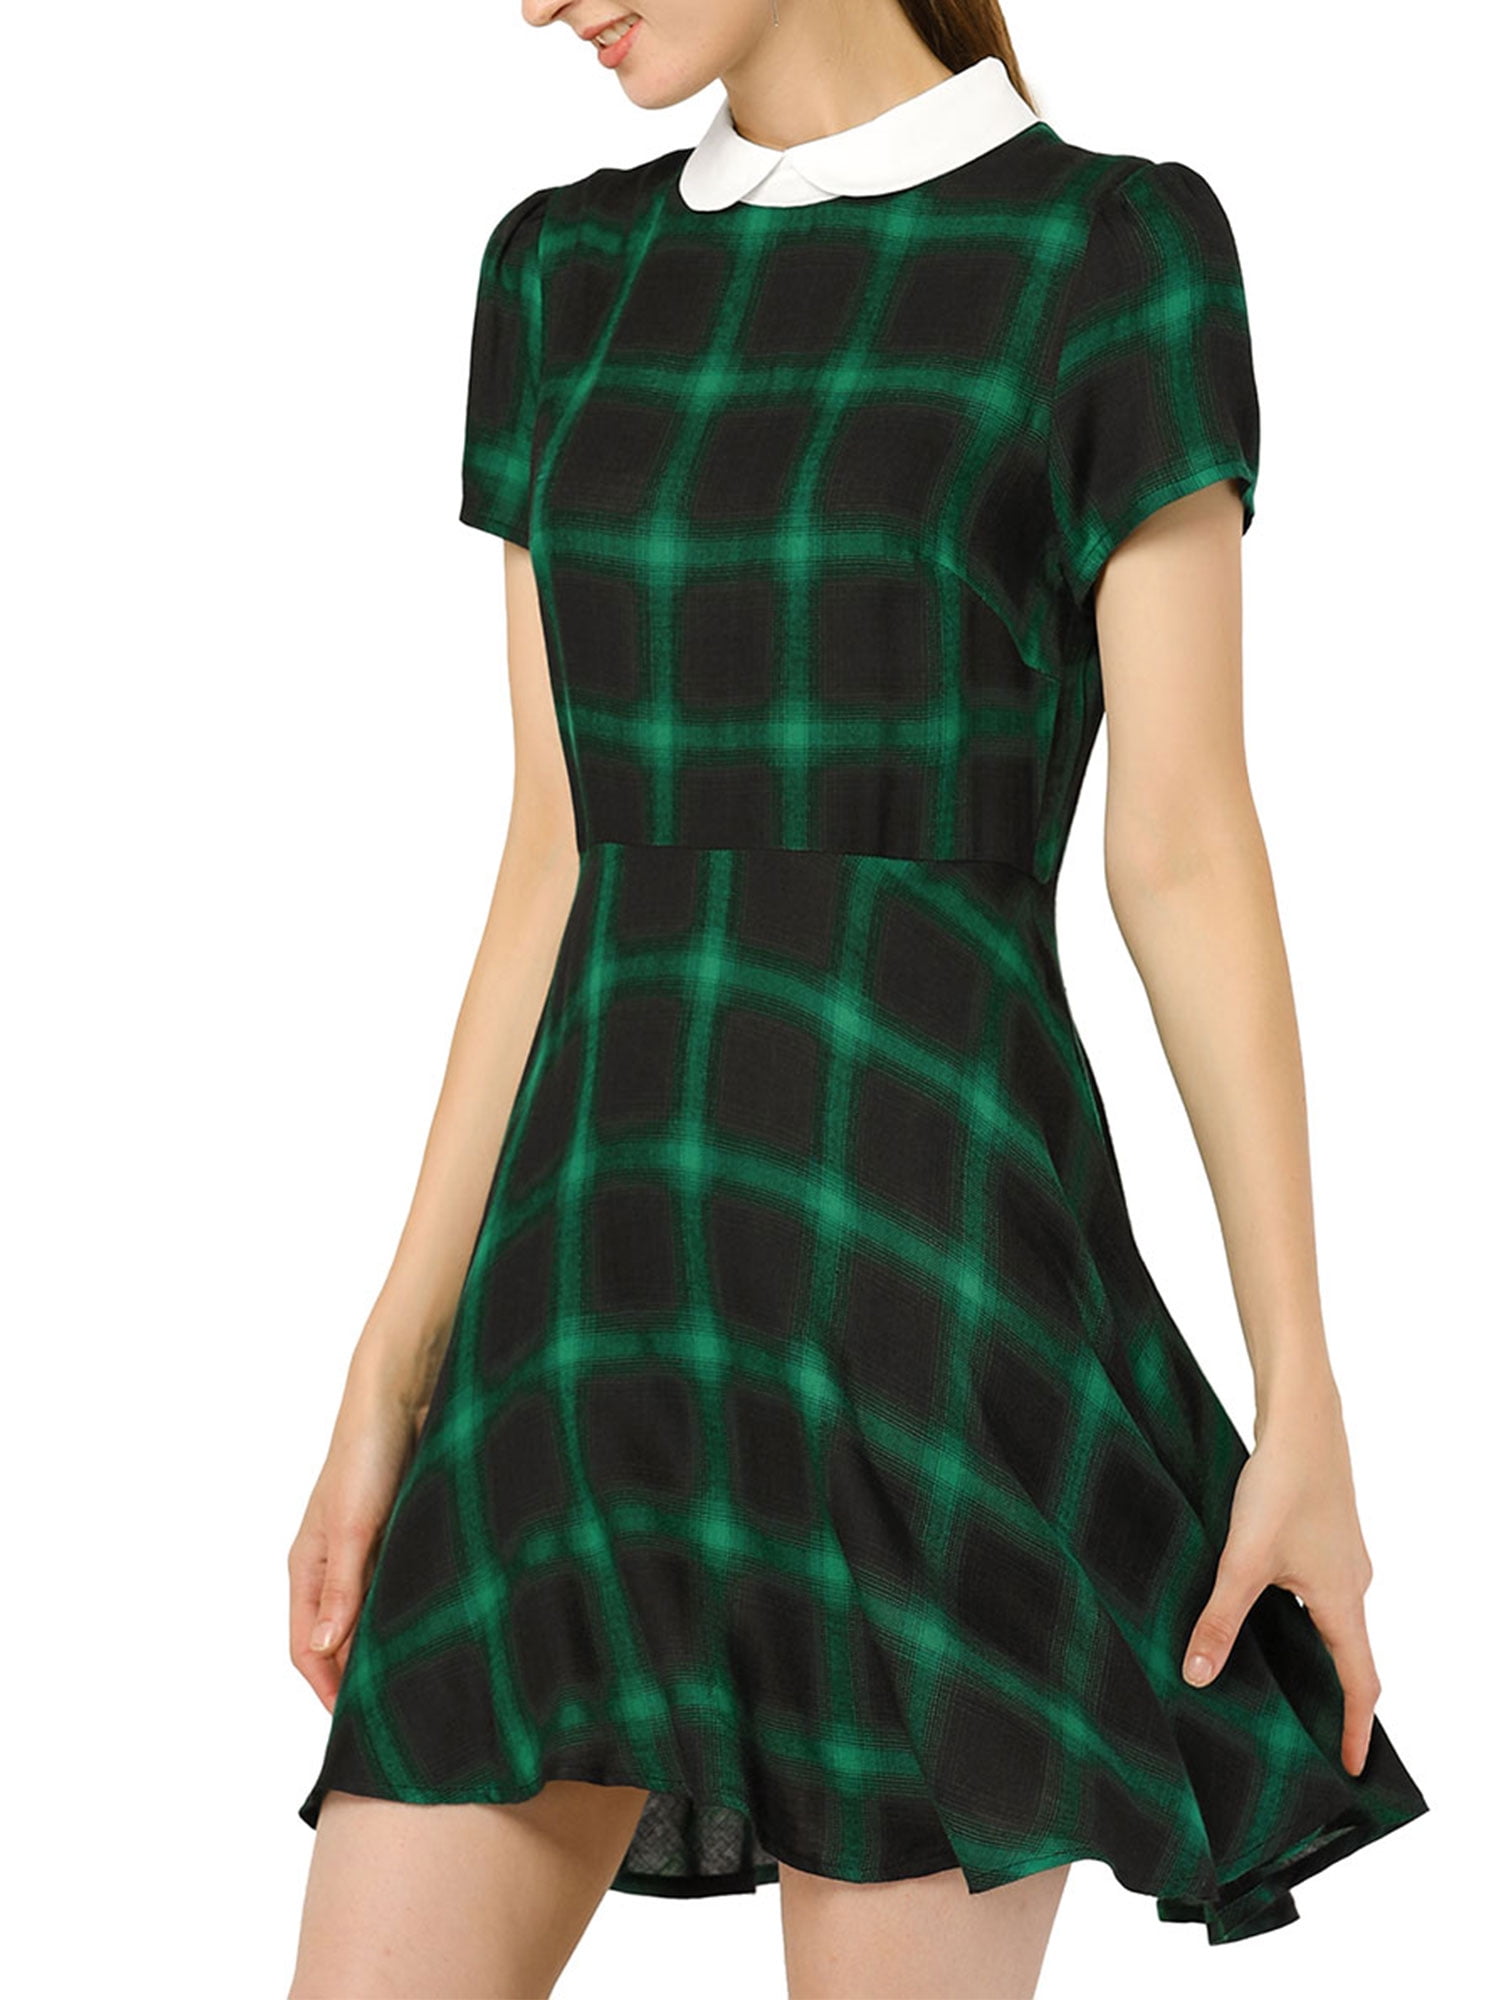 Allegra K Women's Plaids Peter Pan Collar Puff Sleeves Flare Dress Green M